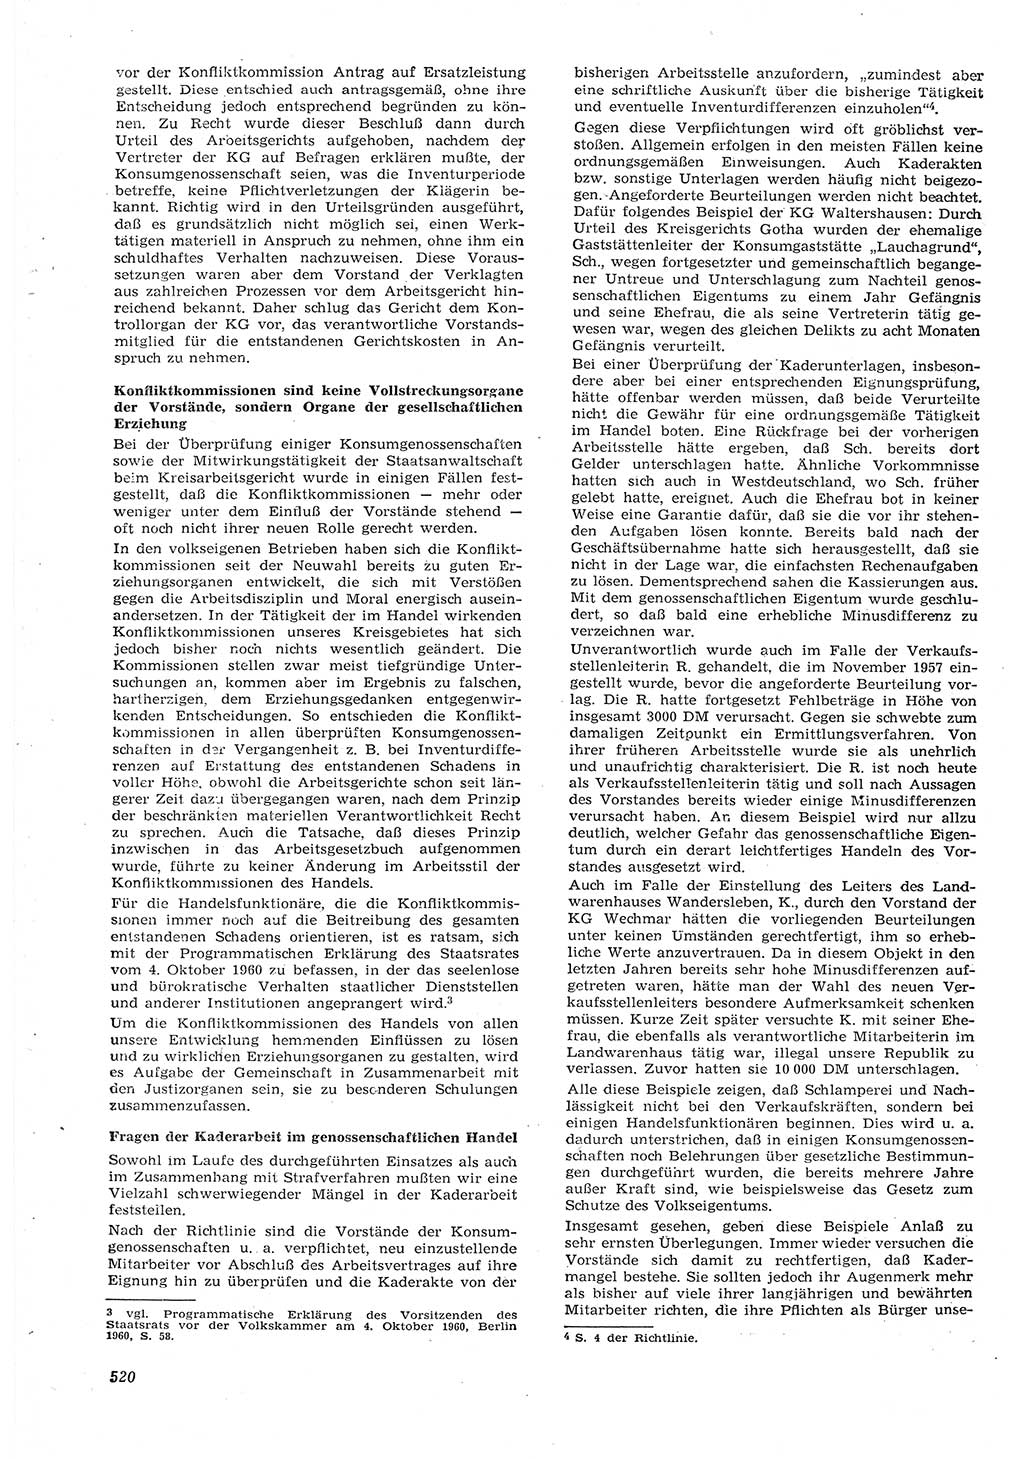 Neue Justiz (NJ), Zeitschrift für Recht und Rechtswissenschaft [Deutsche Demokratische Republik (DDR)], 15. Jahrgang 1961, Seite 520 (NJ DDR 1961, S. 520)